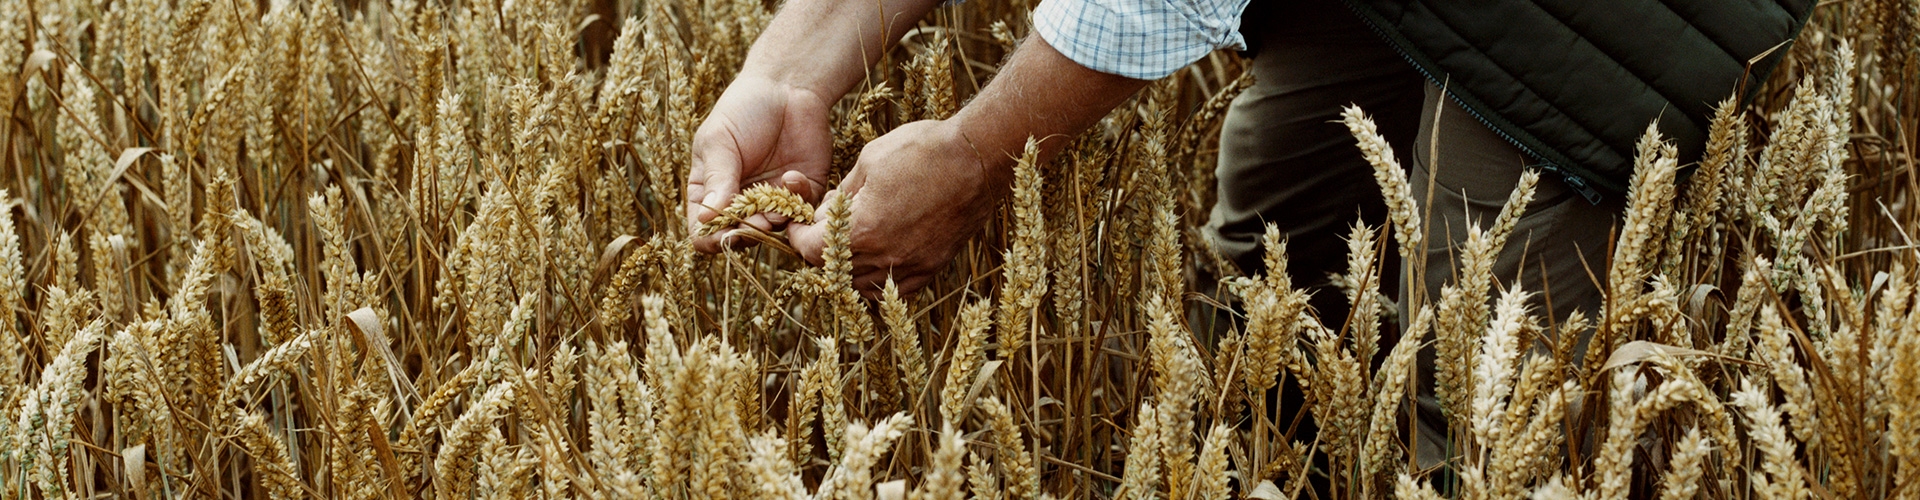 Seguro Agrario especializado para cultivos forrajeros - Hombre agricultor en campo de trigo, revisando la calidad de su cultivo